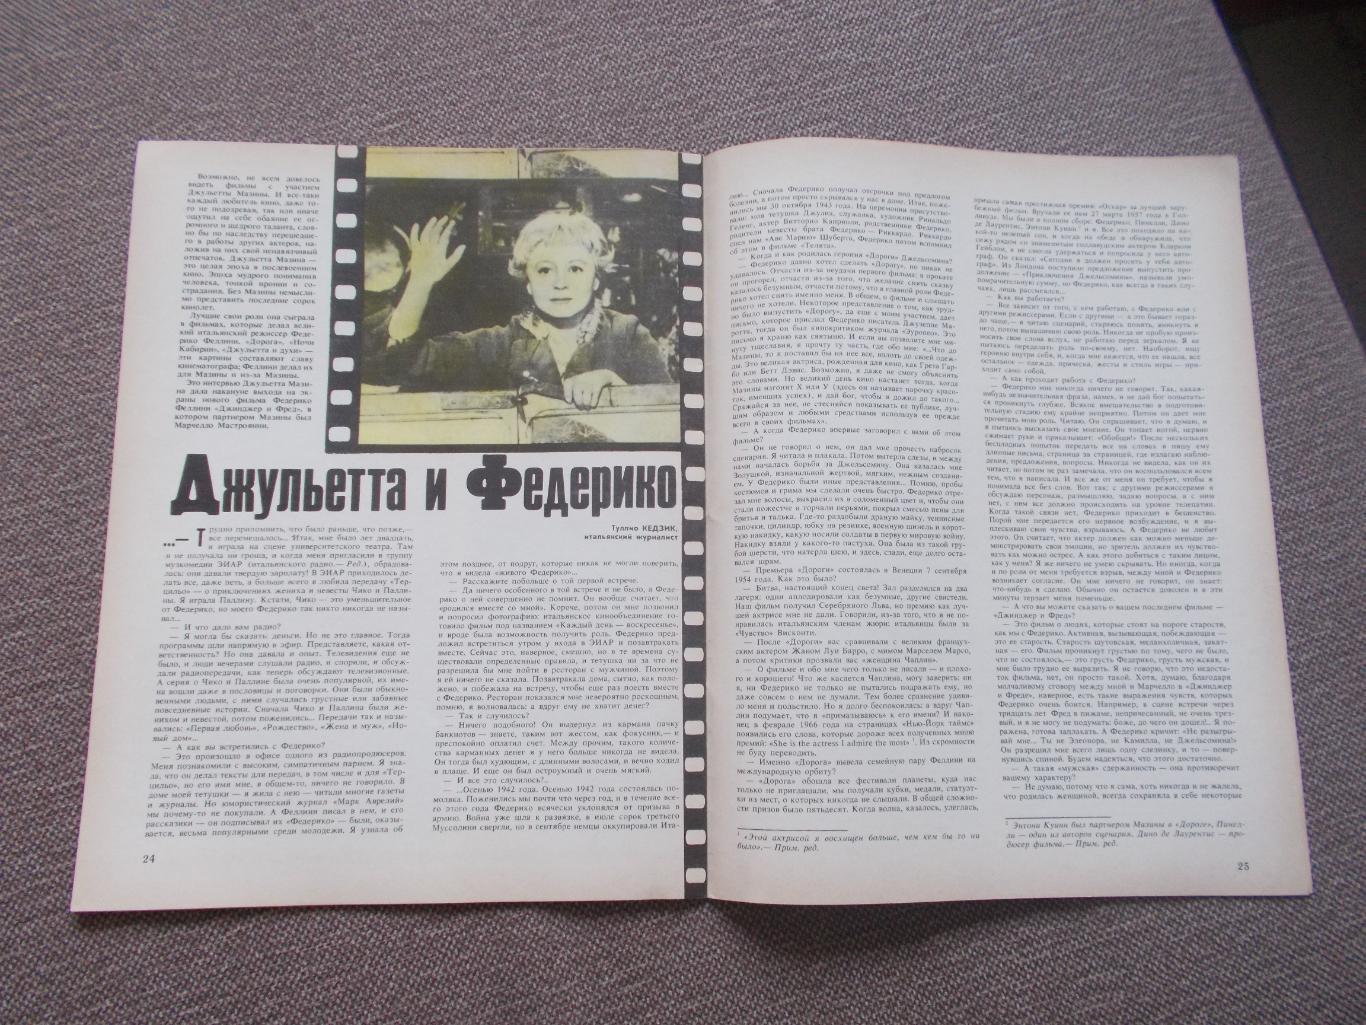 Журнал СССР :Ровесник№ 5 (май) 1986 г. (Молодежный музыкальный журнал) 3